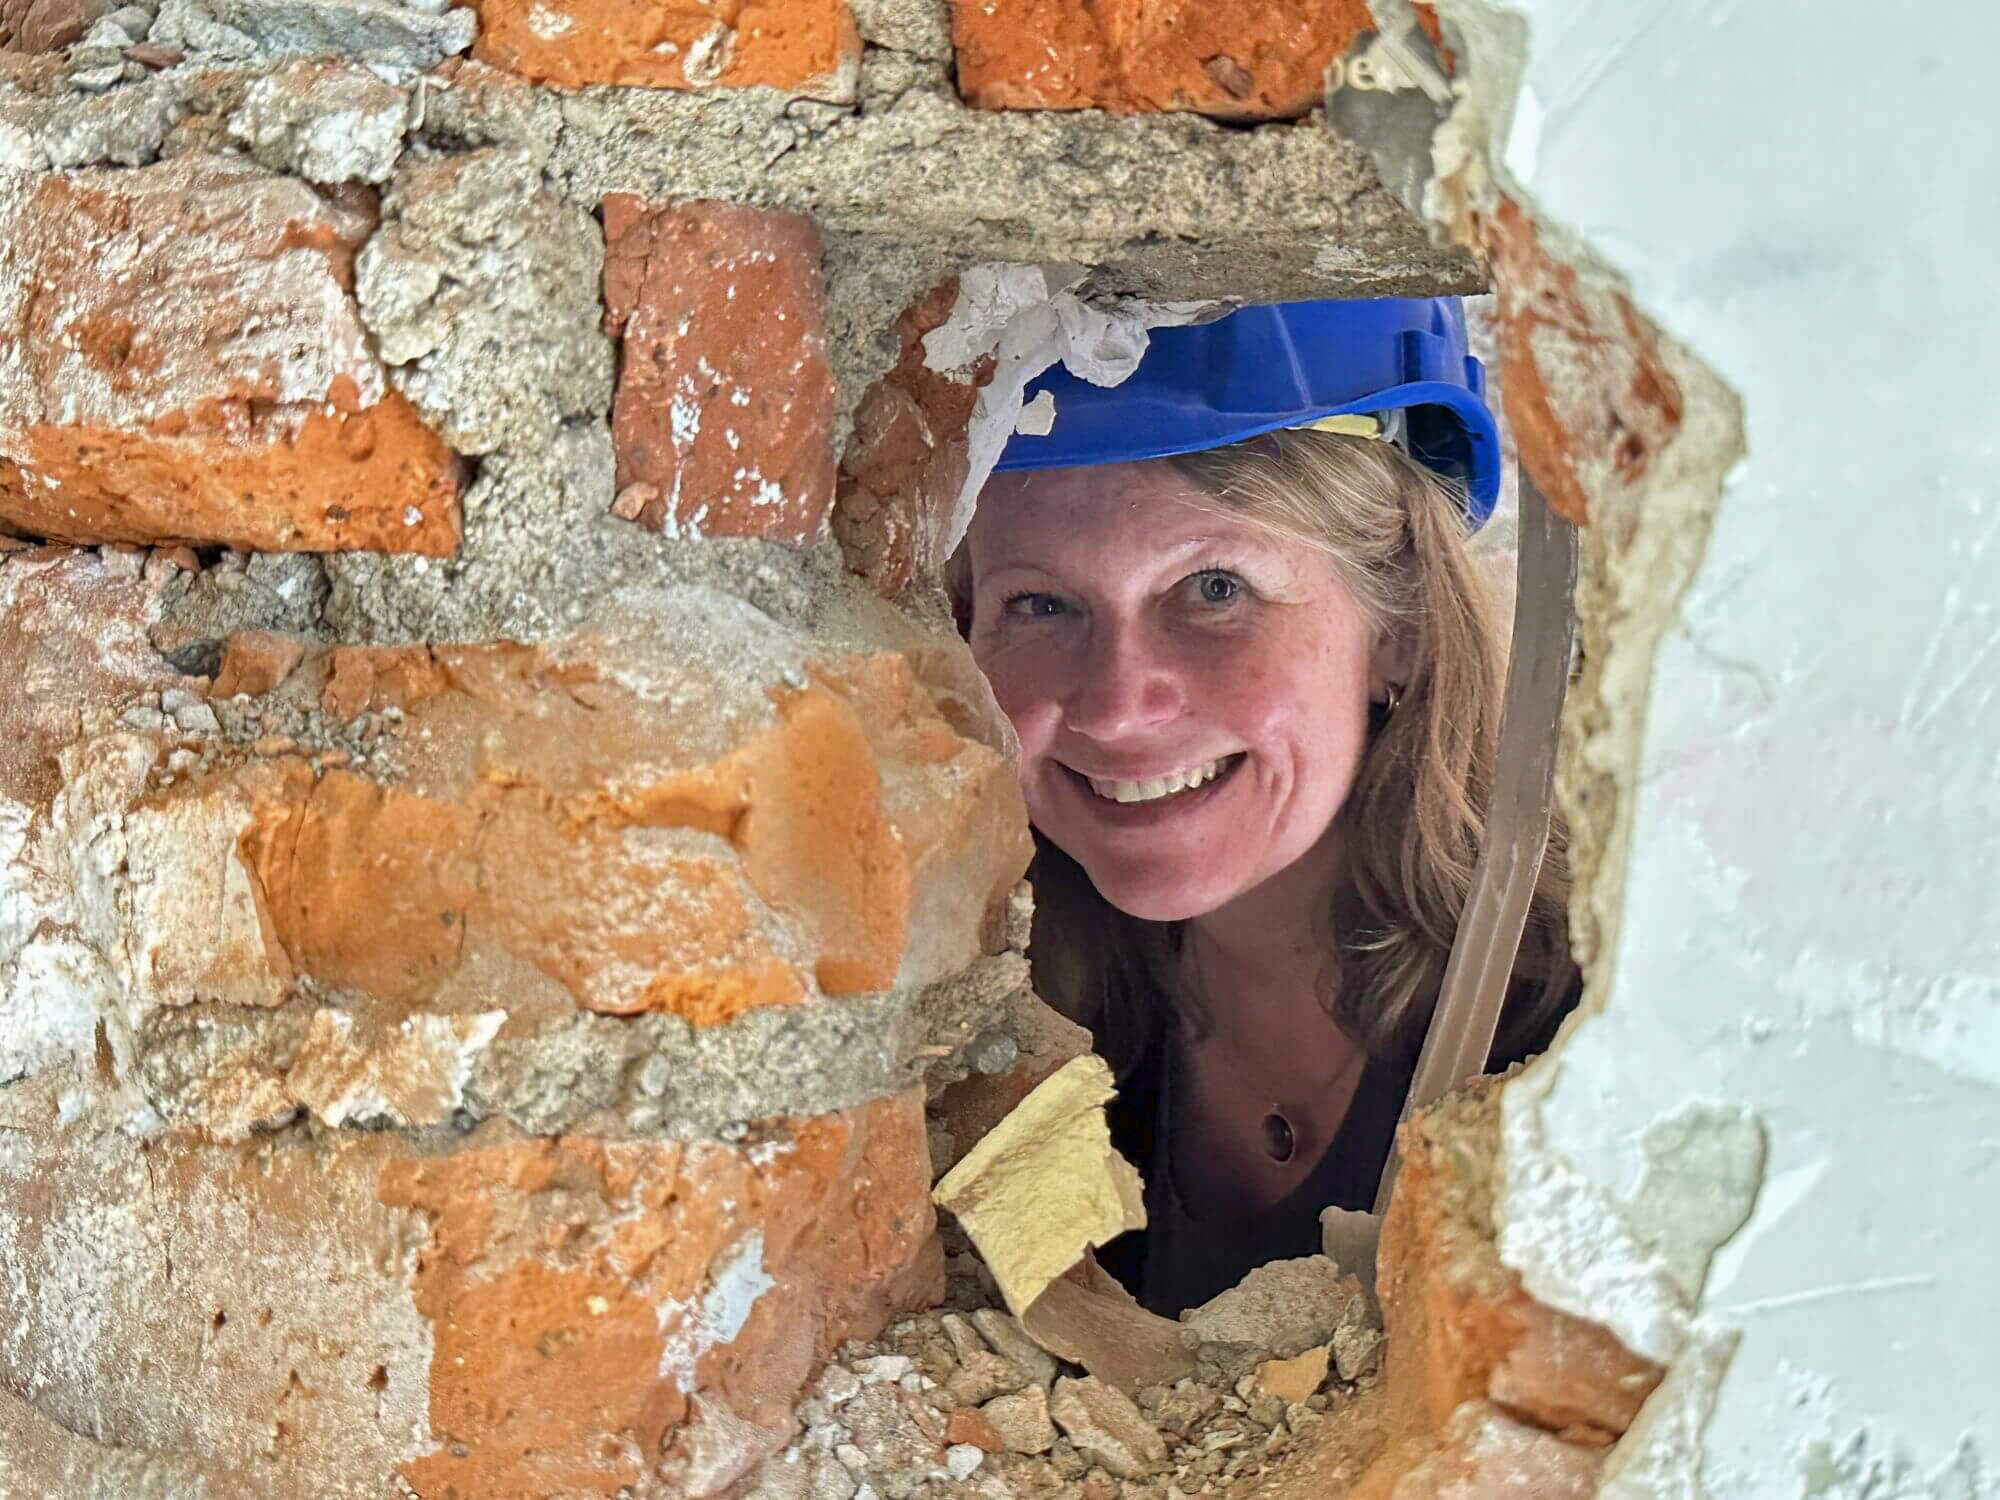 Die Architektin mit Helm auf dem Kopf lächelt durch ein Loch in der Wand in die Kamera